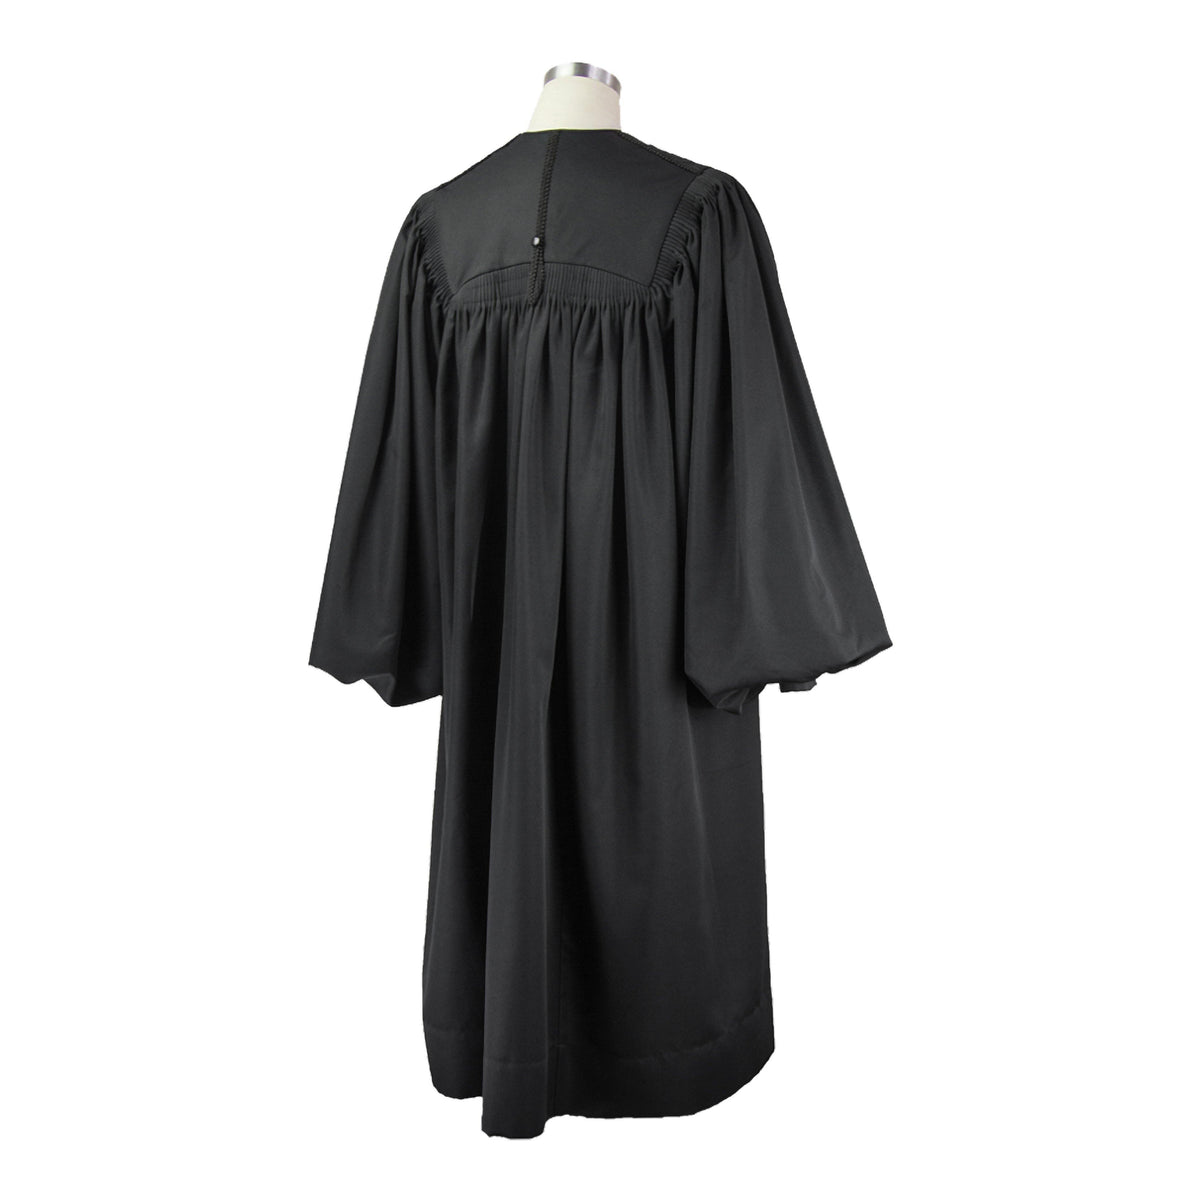 Juristic Judge Robe – Judicial Shop